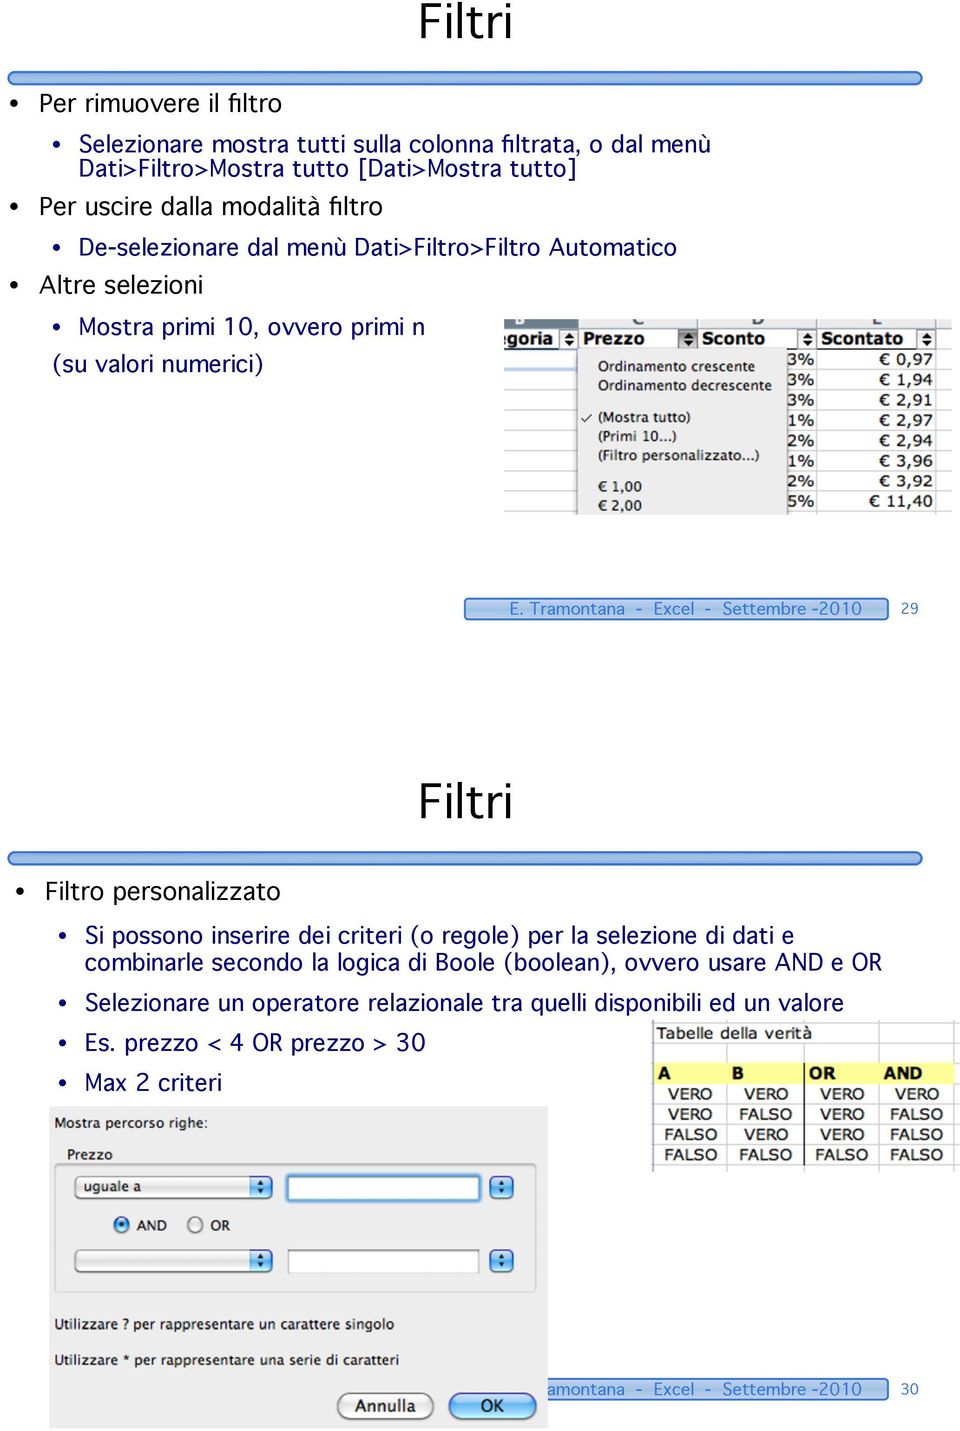 Tramontana - Excel - Settembre -2010 29 Filtri Filtro personalizzato Si possono inserire dei criteri (o regole) per la selezione di dati e combinarle secondo la